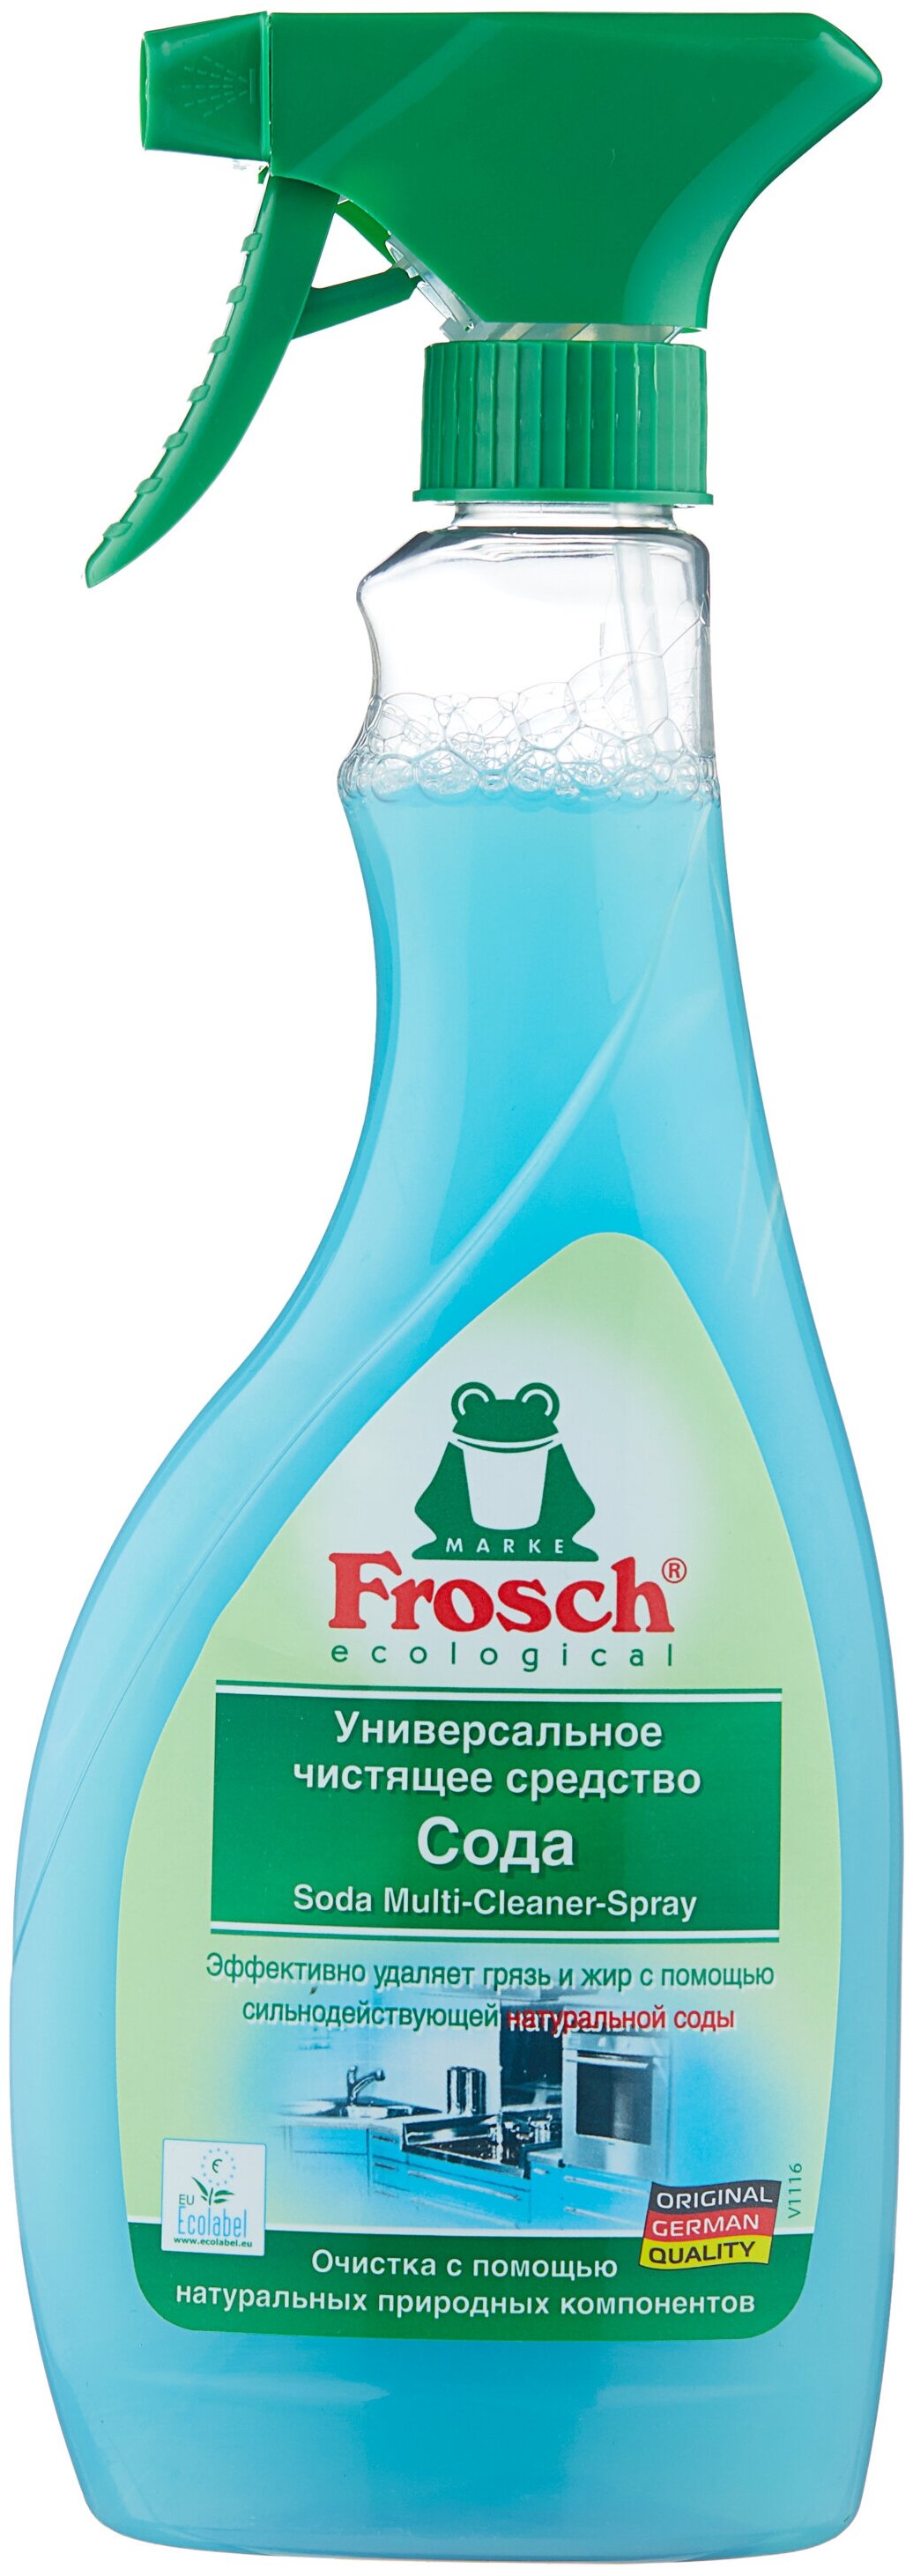 Универсальное чистящее средство Сода Frosch - особенности: универсальное